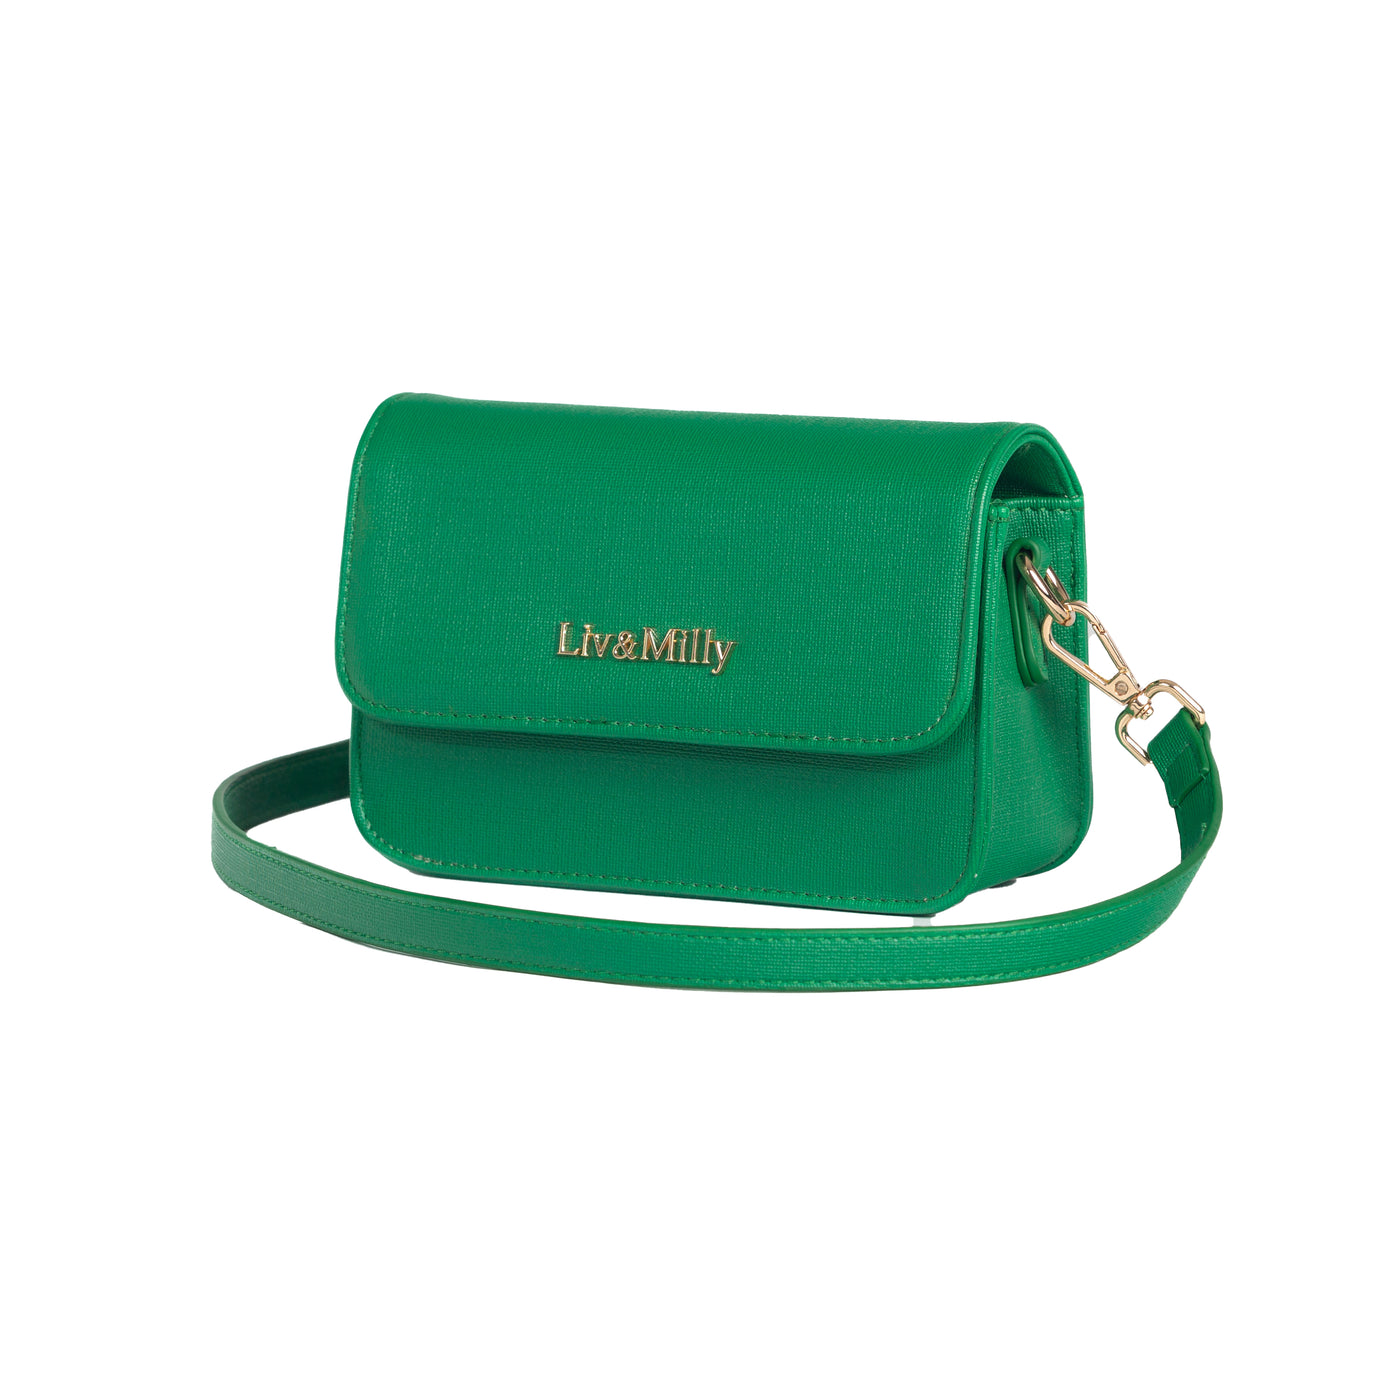 Small green handbag